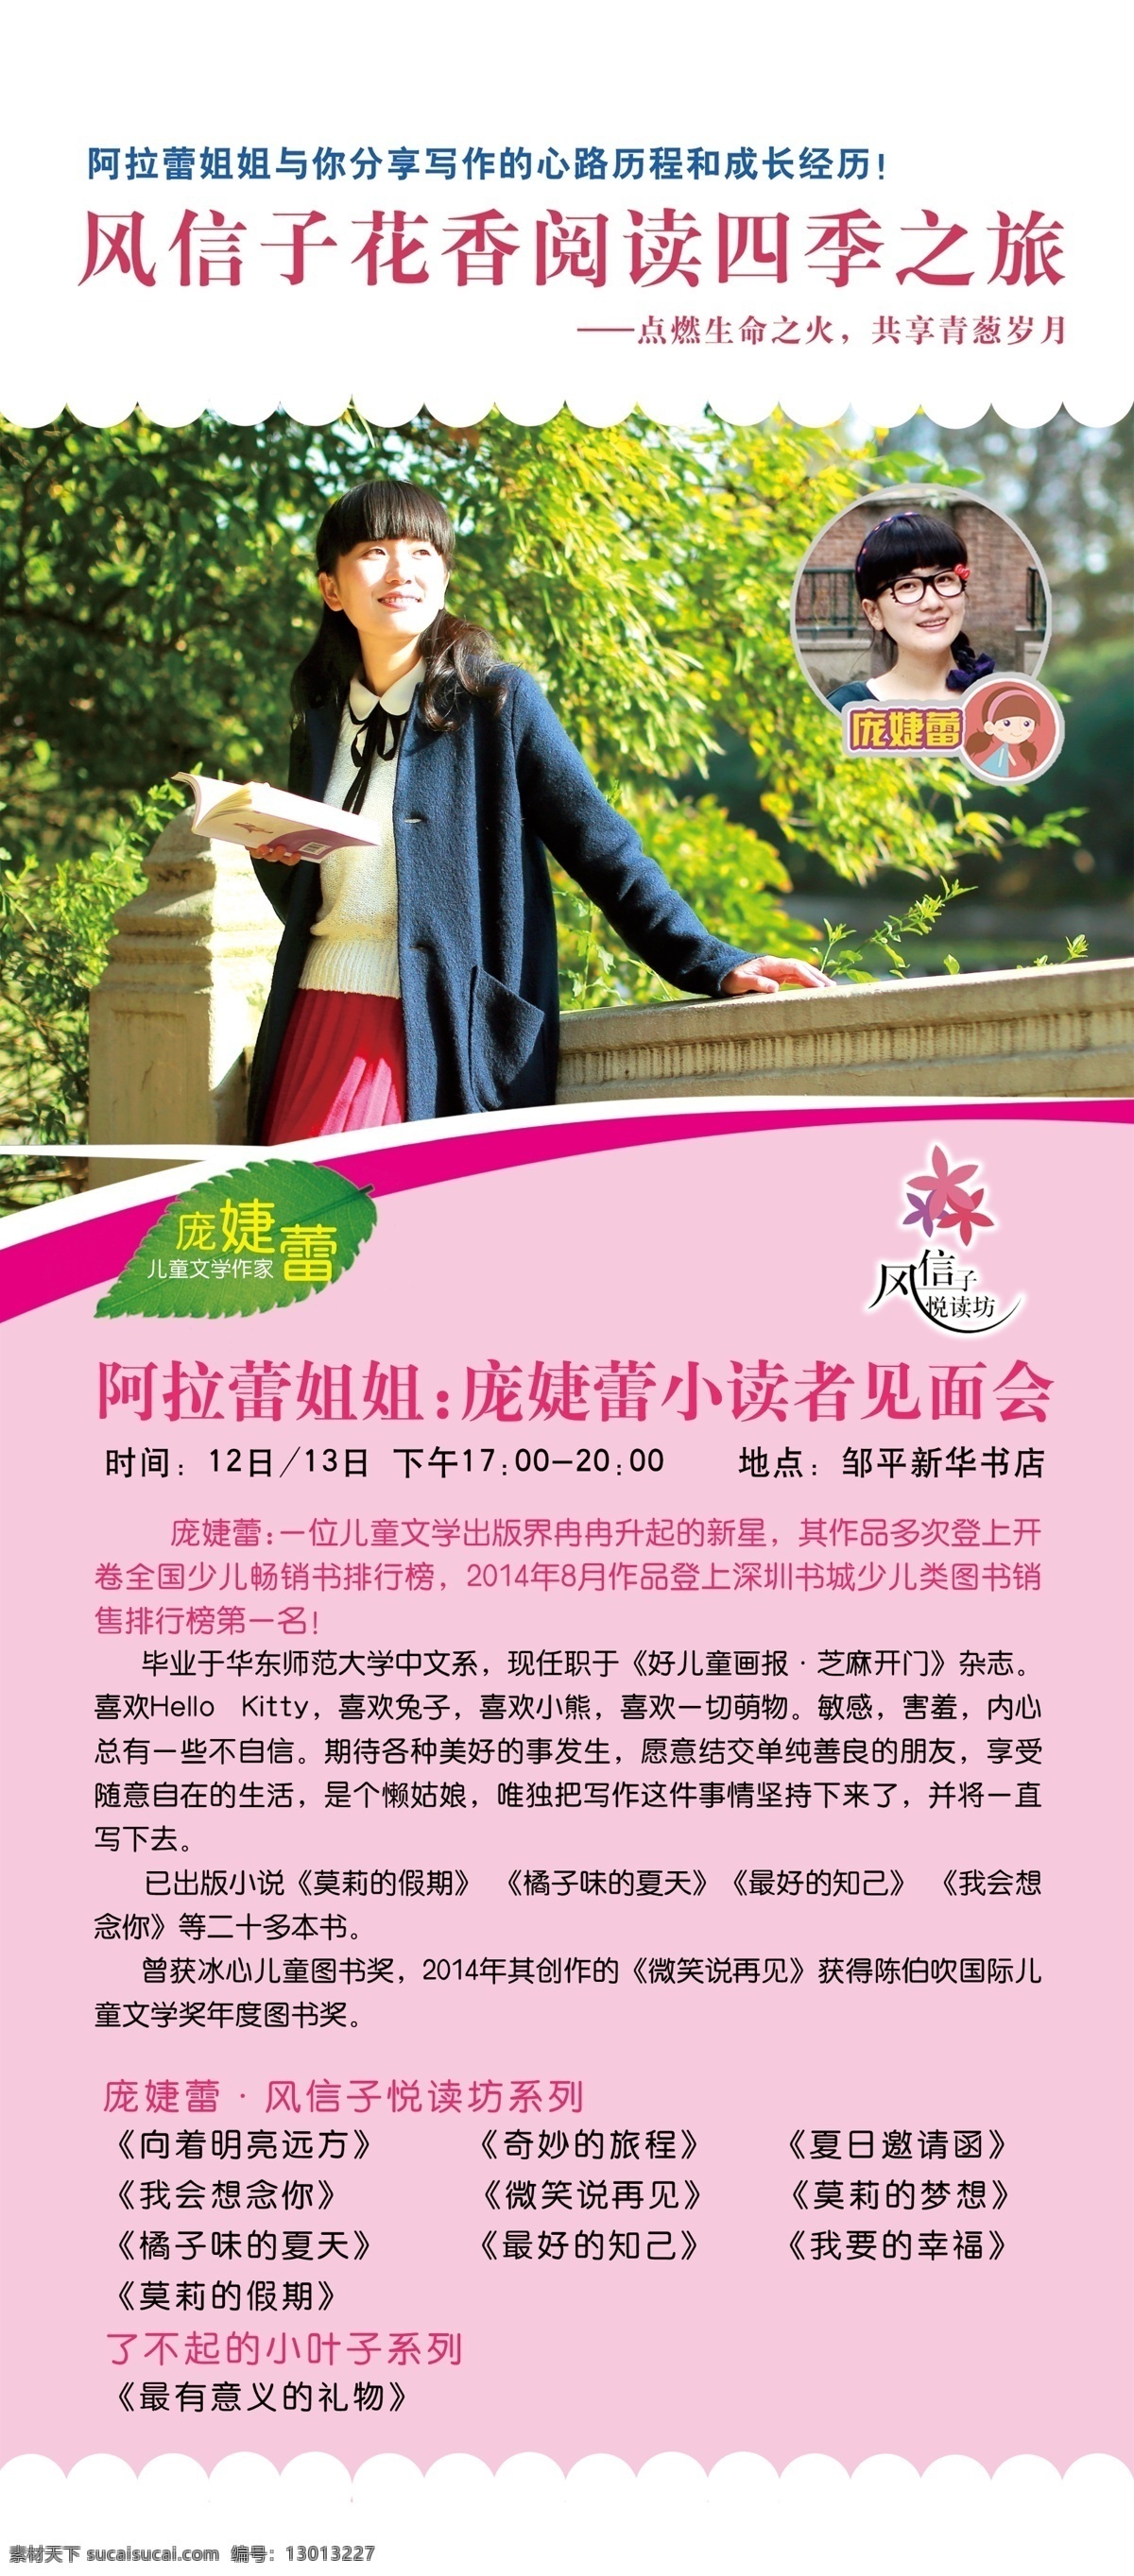 风信子 庞 婕 蕾 宣传 活动 易拉宝 新华书店 庞婕蕾 宣传活动 x支架